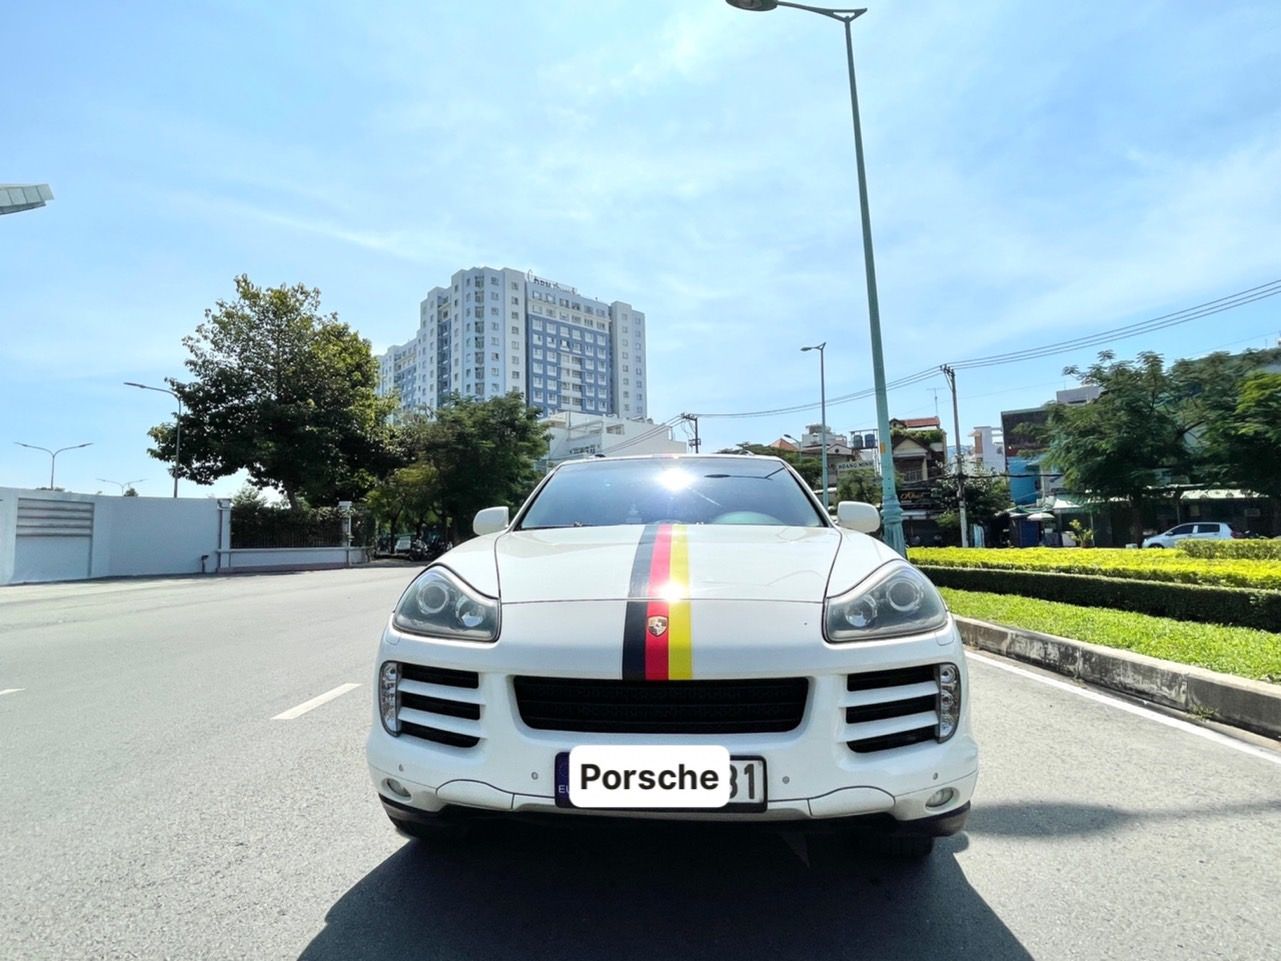 Porsche Cayenne 2008 - Porsche Cayenne 3.6 nhập Đức 2008, ít hao xăng 100km/ 12l